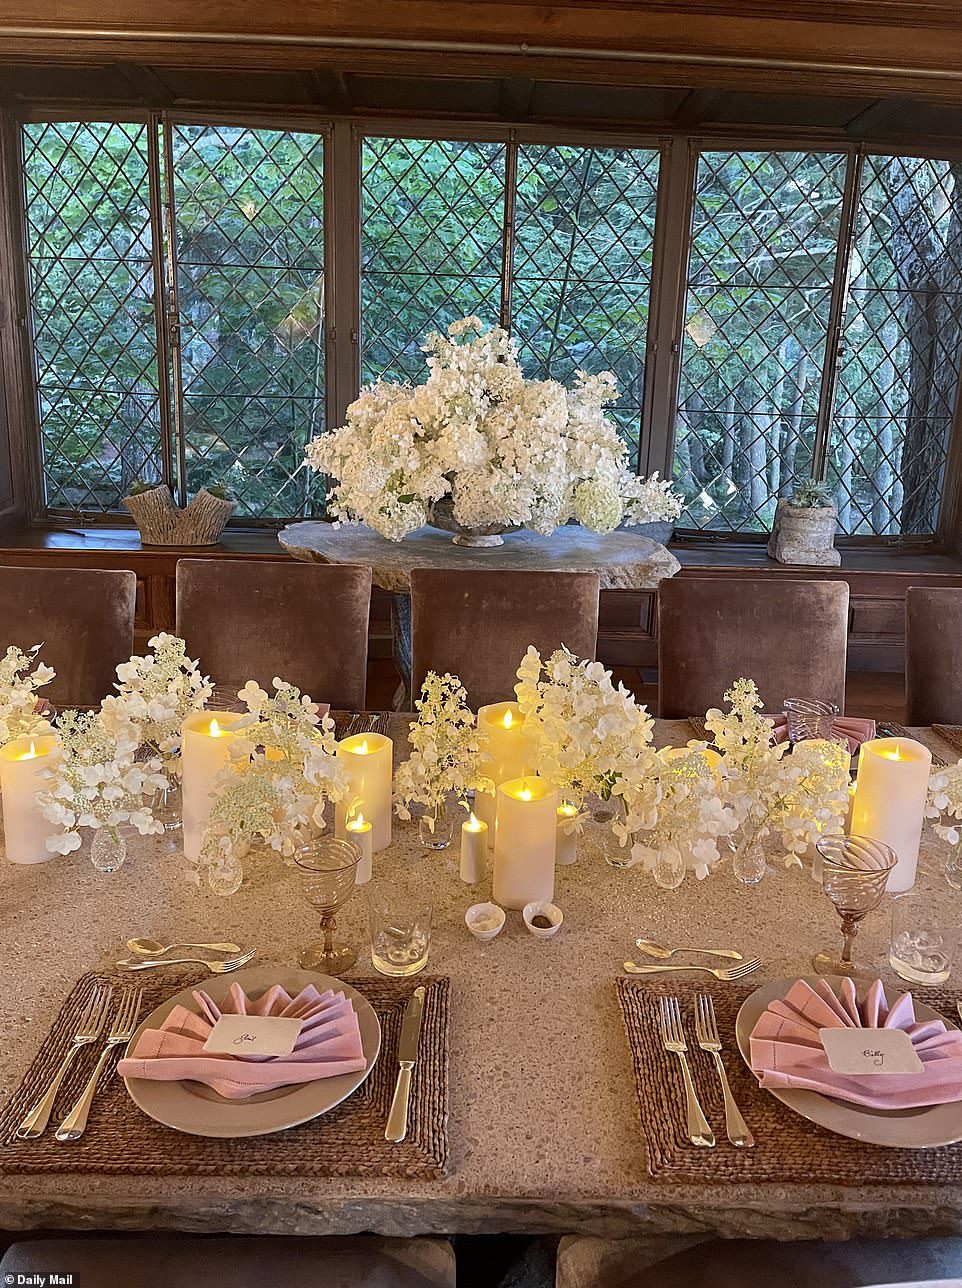 Kerzenlicht: Die Tischdekoration umfasst Weiß-, Rosa- und Brauntöne